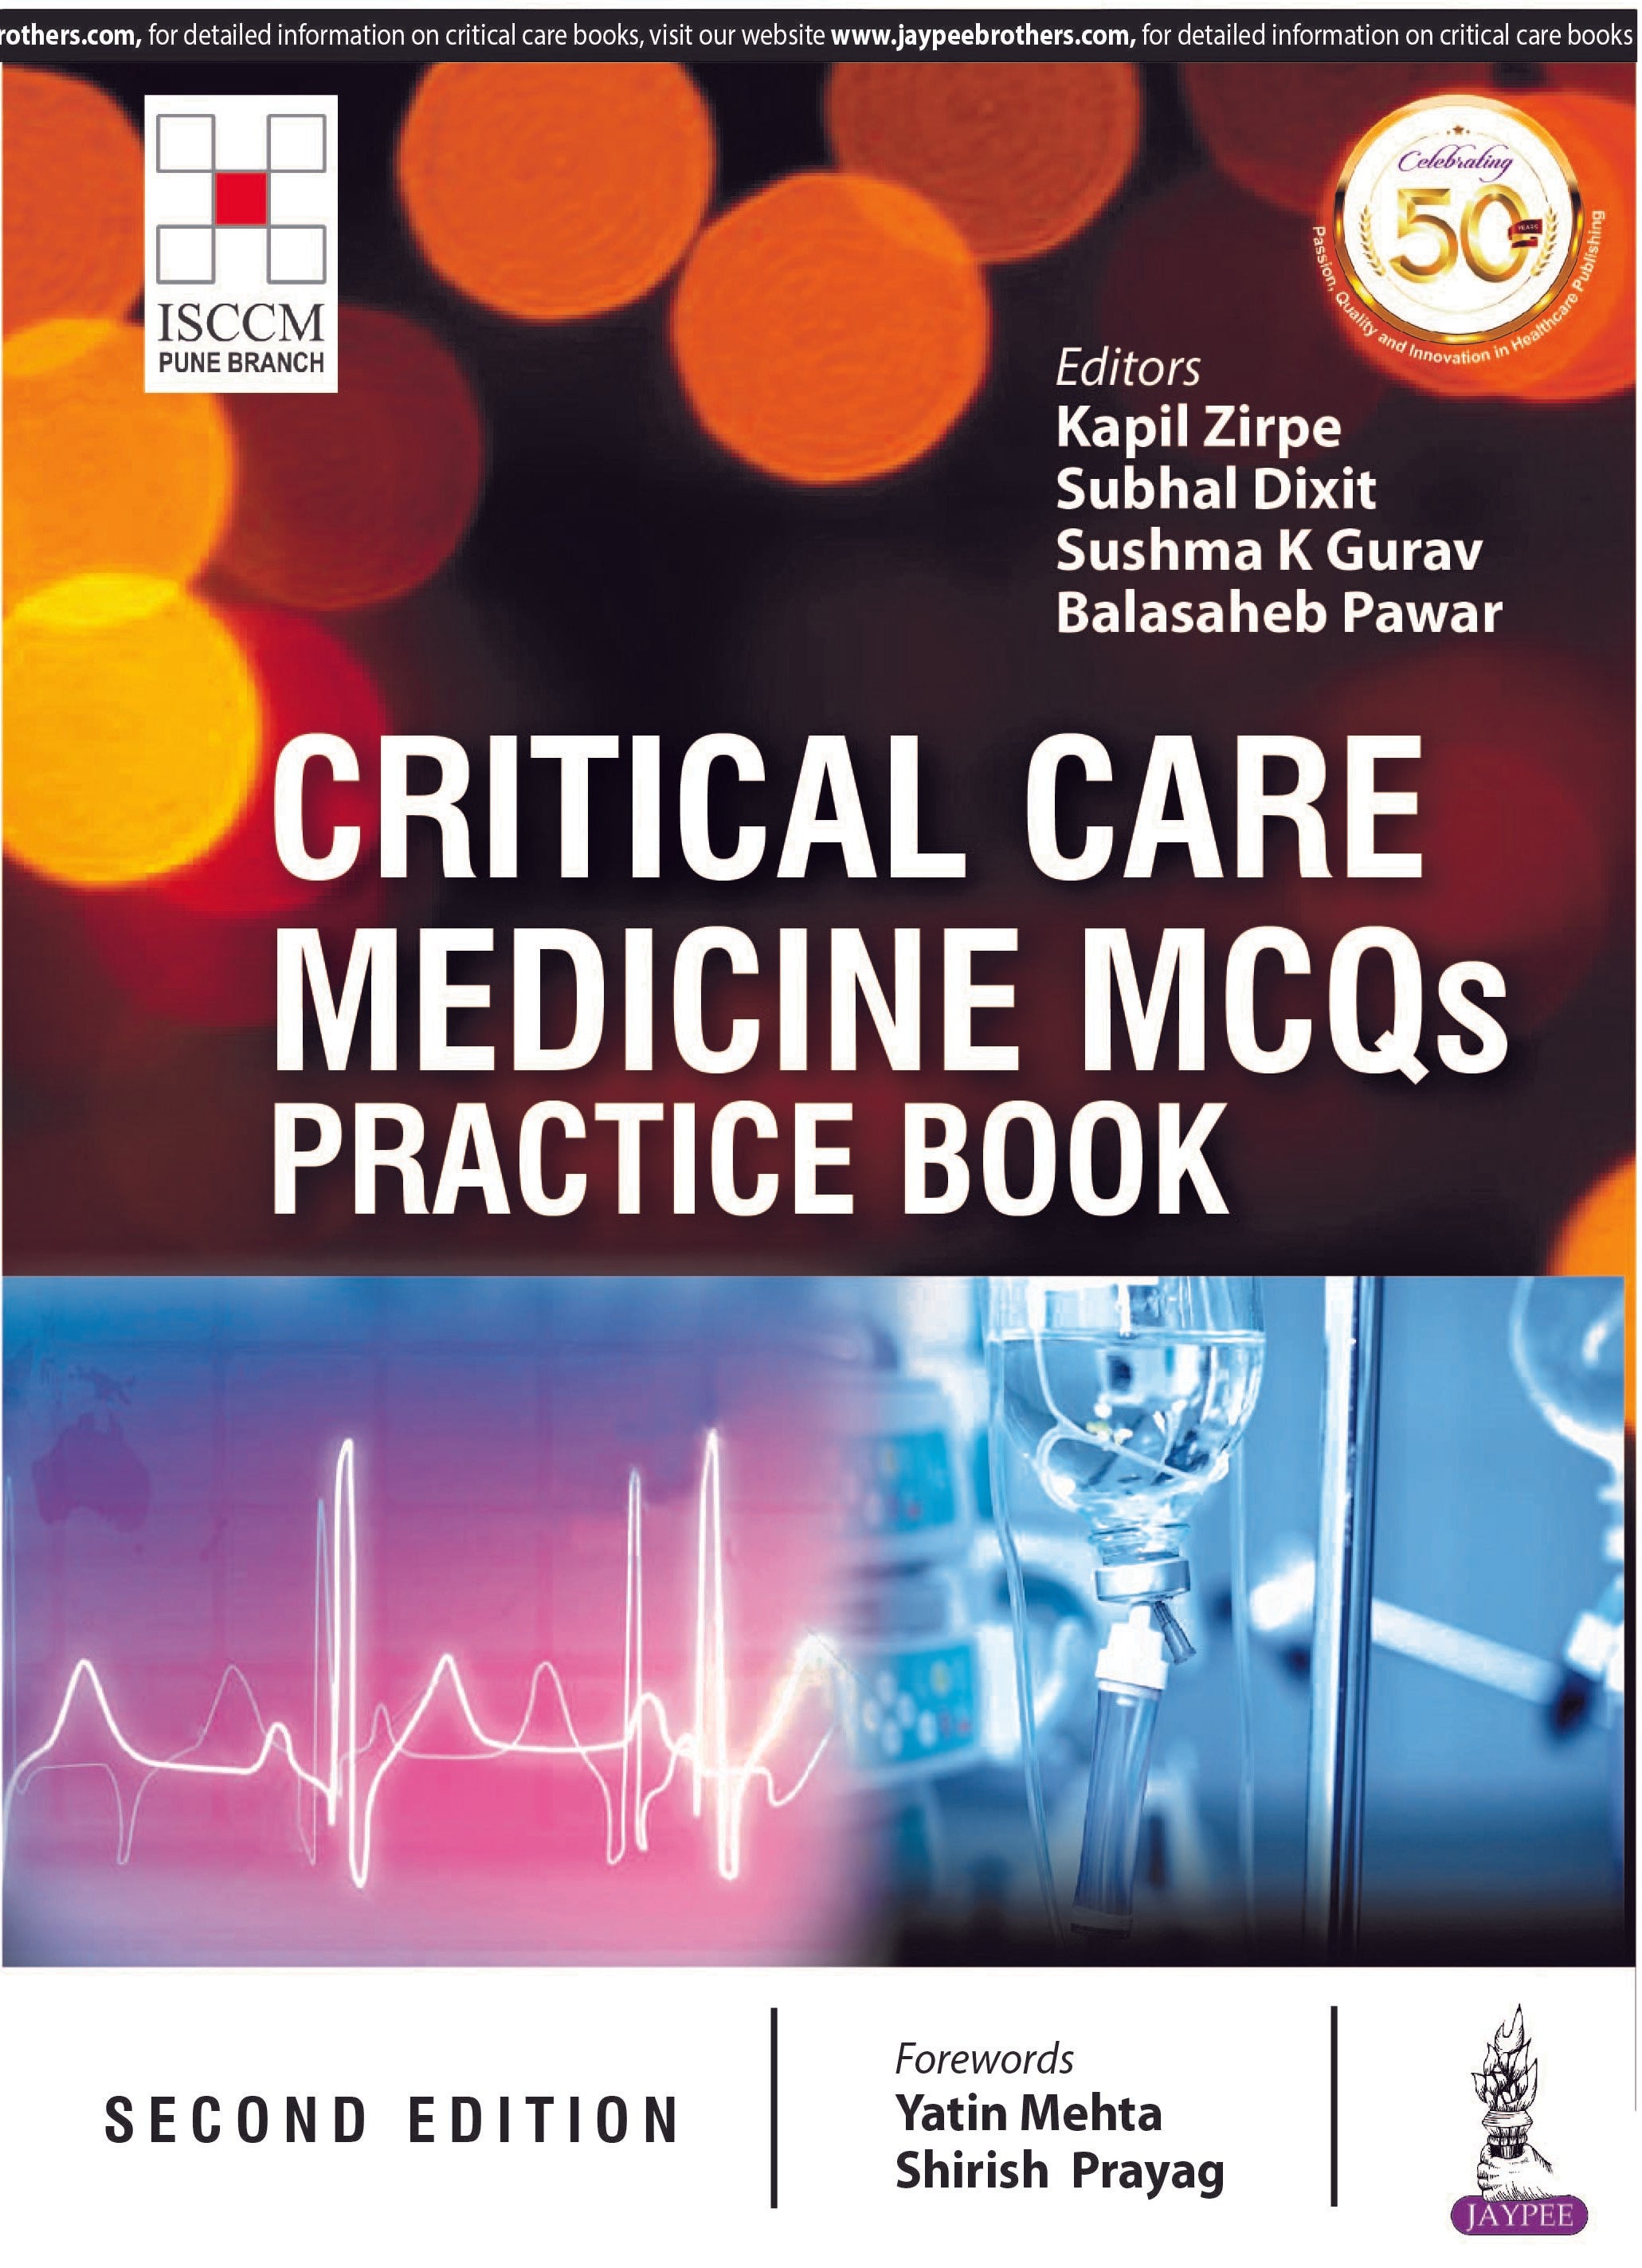 CRITICAL CARE MEDICINE MCQS- PRACTICE BOOK (ISCCM),2/E,KAPIL ZIRPE